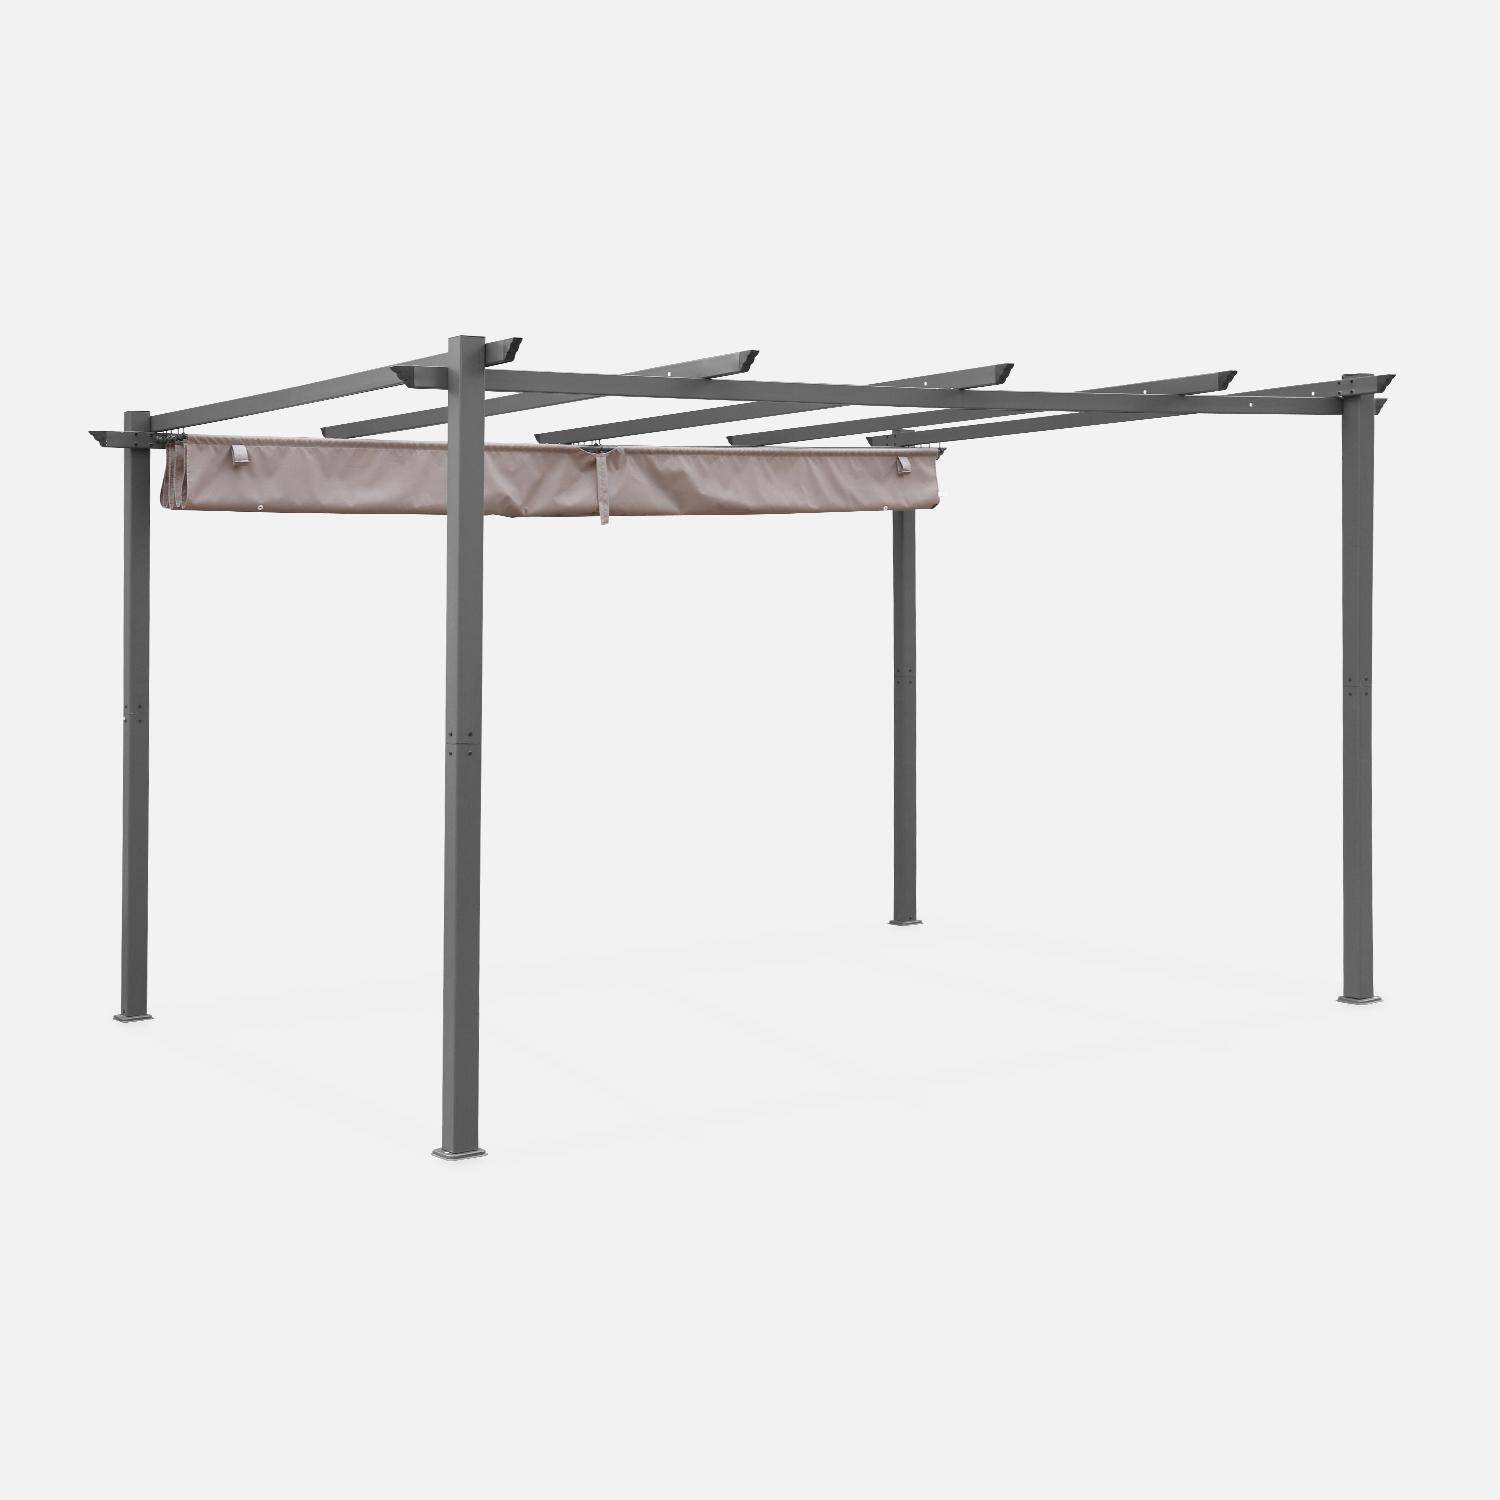 Pergola aluminium - Isla 3x4m -  Toile taupe - Tonnelle idéale pour votre terrasse, toit rétractable, toile coulissante, structure aluminium Photo3